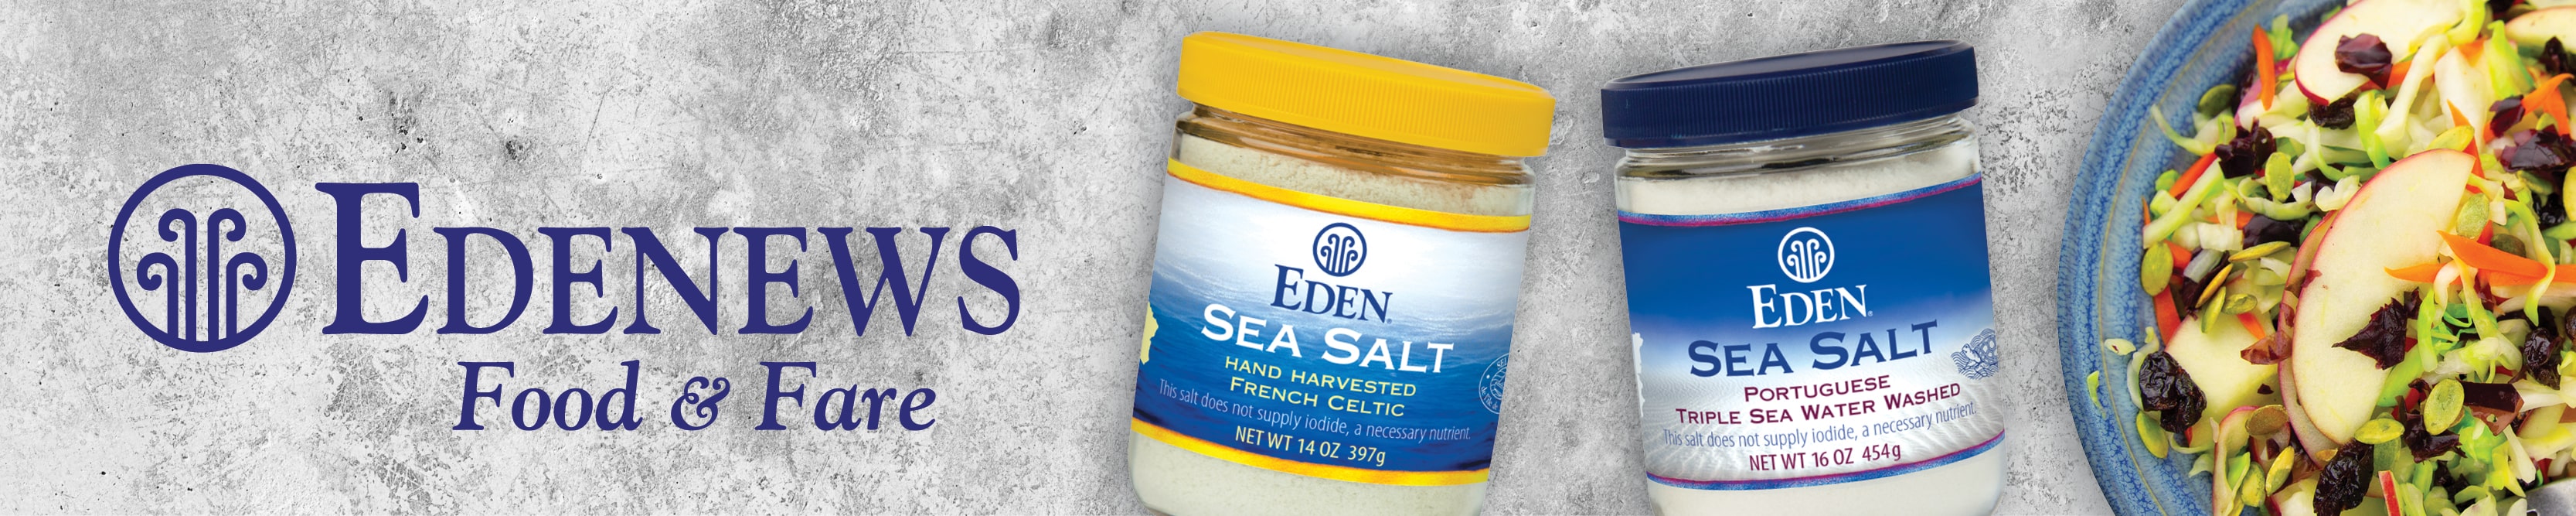 Sea Salt - French Celtic - Eden Foods